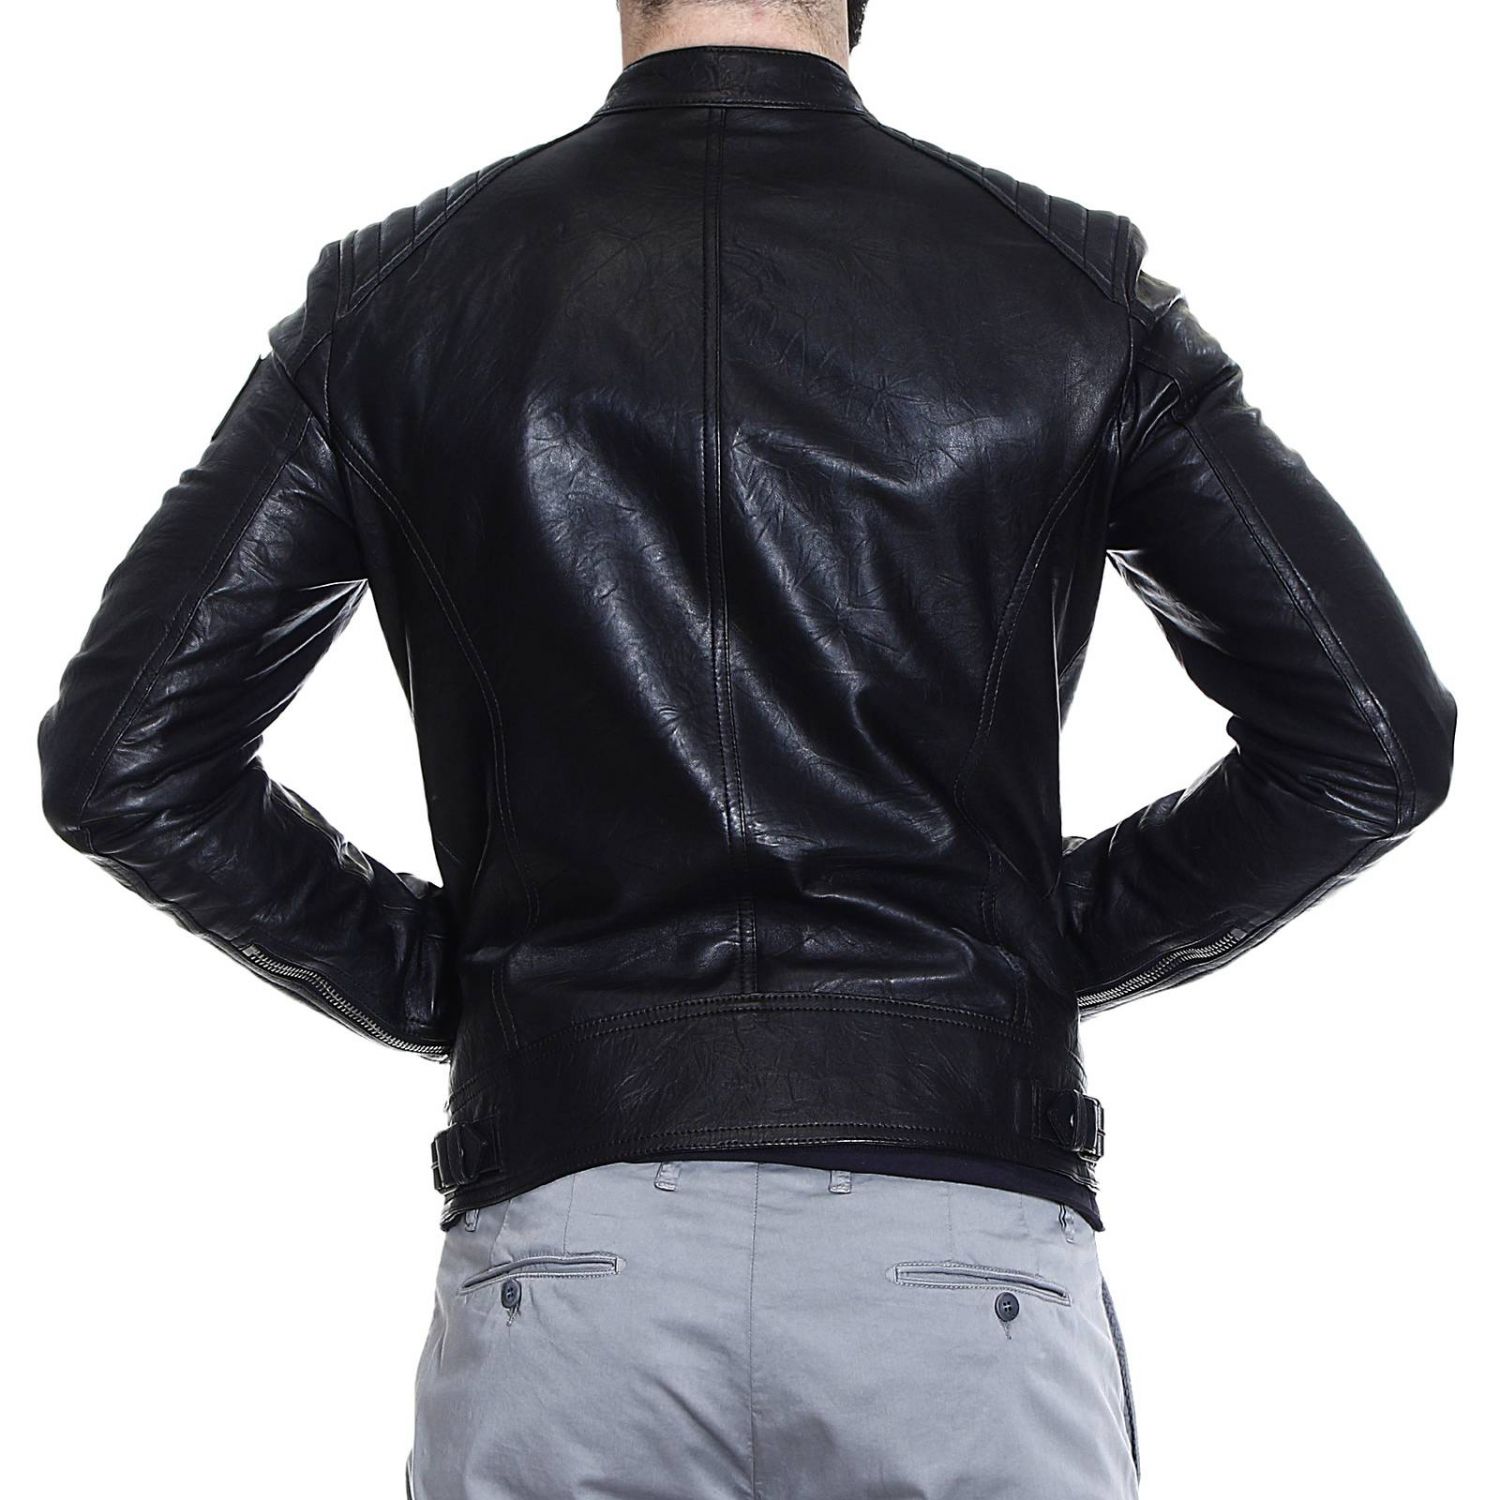 Belstaff Outlet: jacket k racer motor leather | Jacket Belstaff Men ...